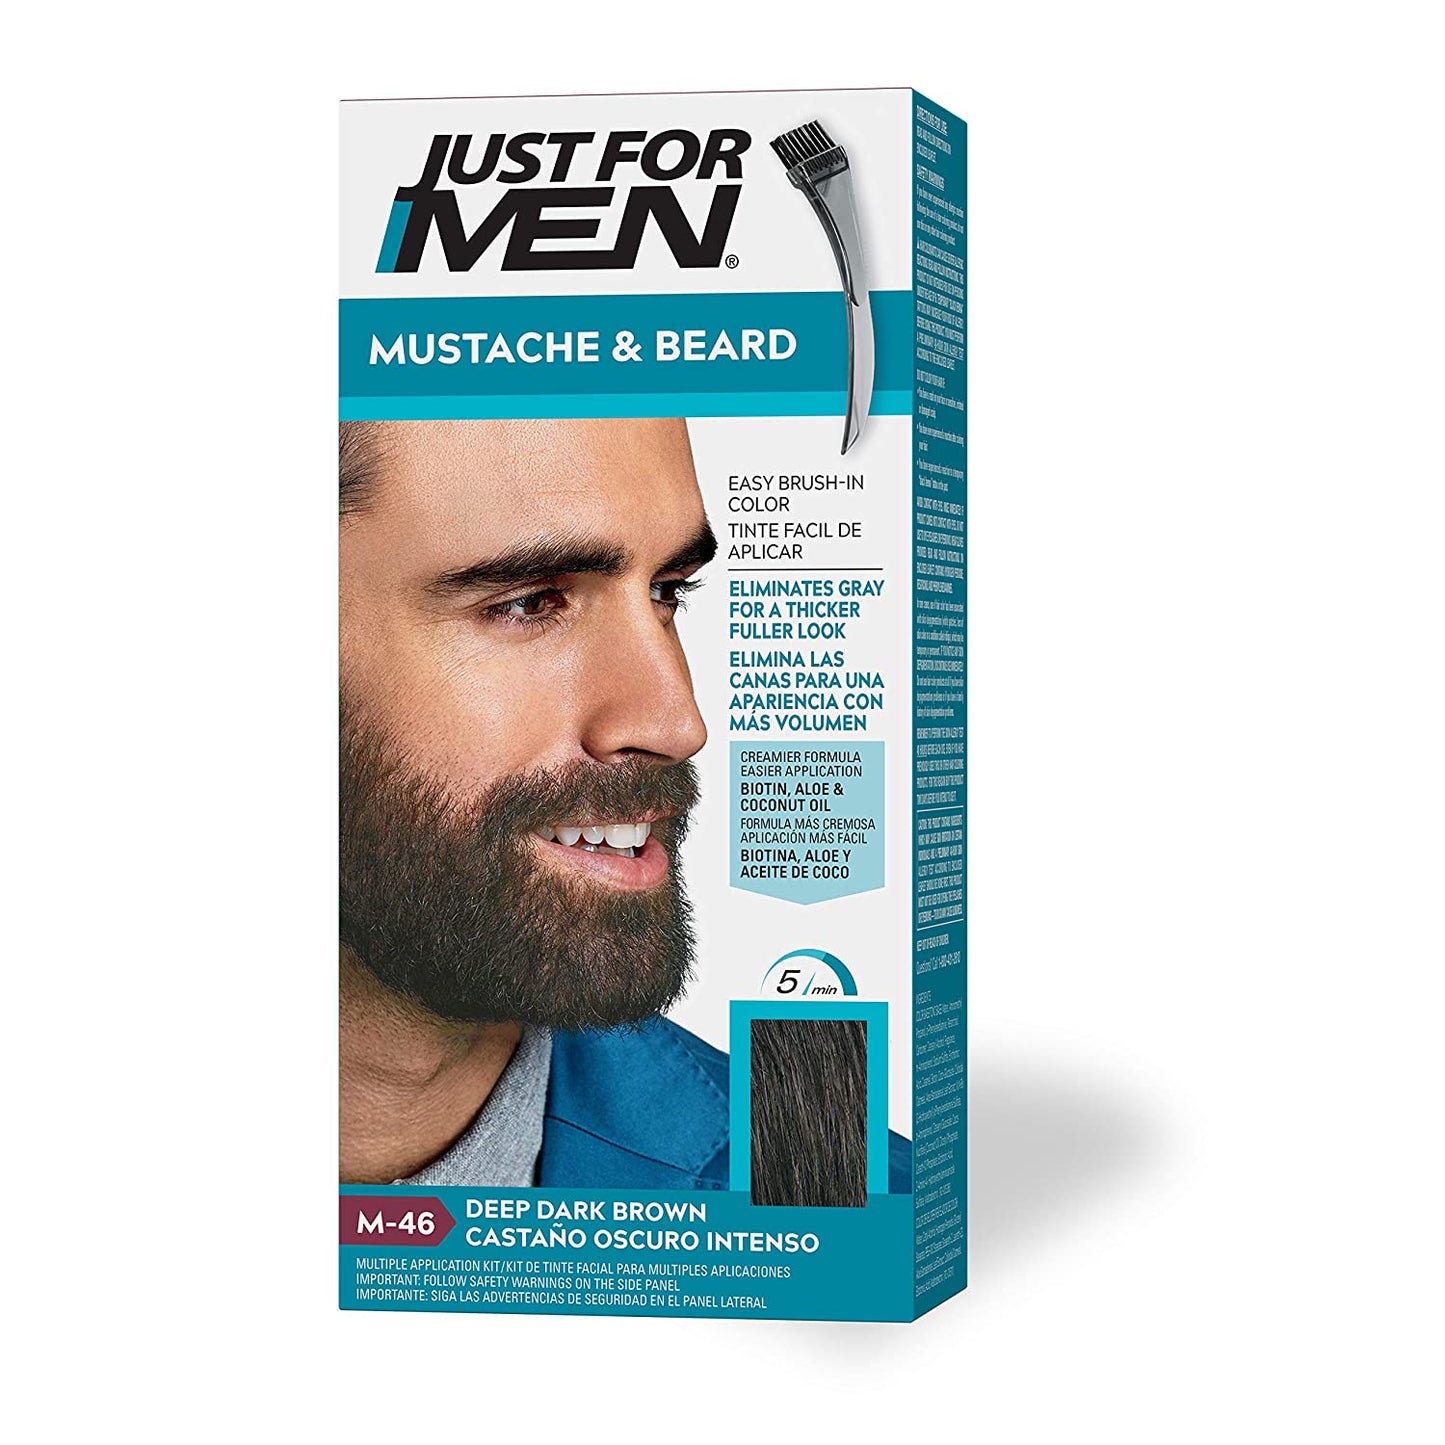 Just For Men Mustache & Beard Brush-In Color Gel - 14g